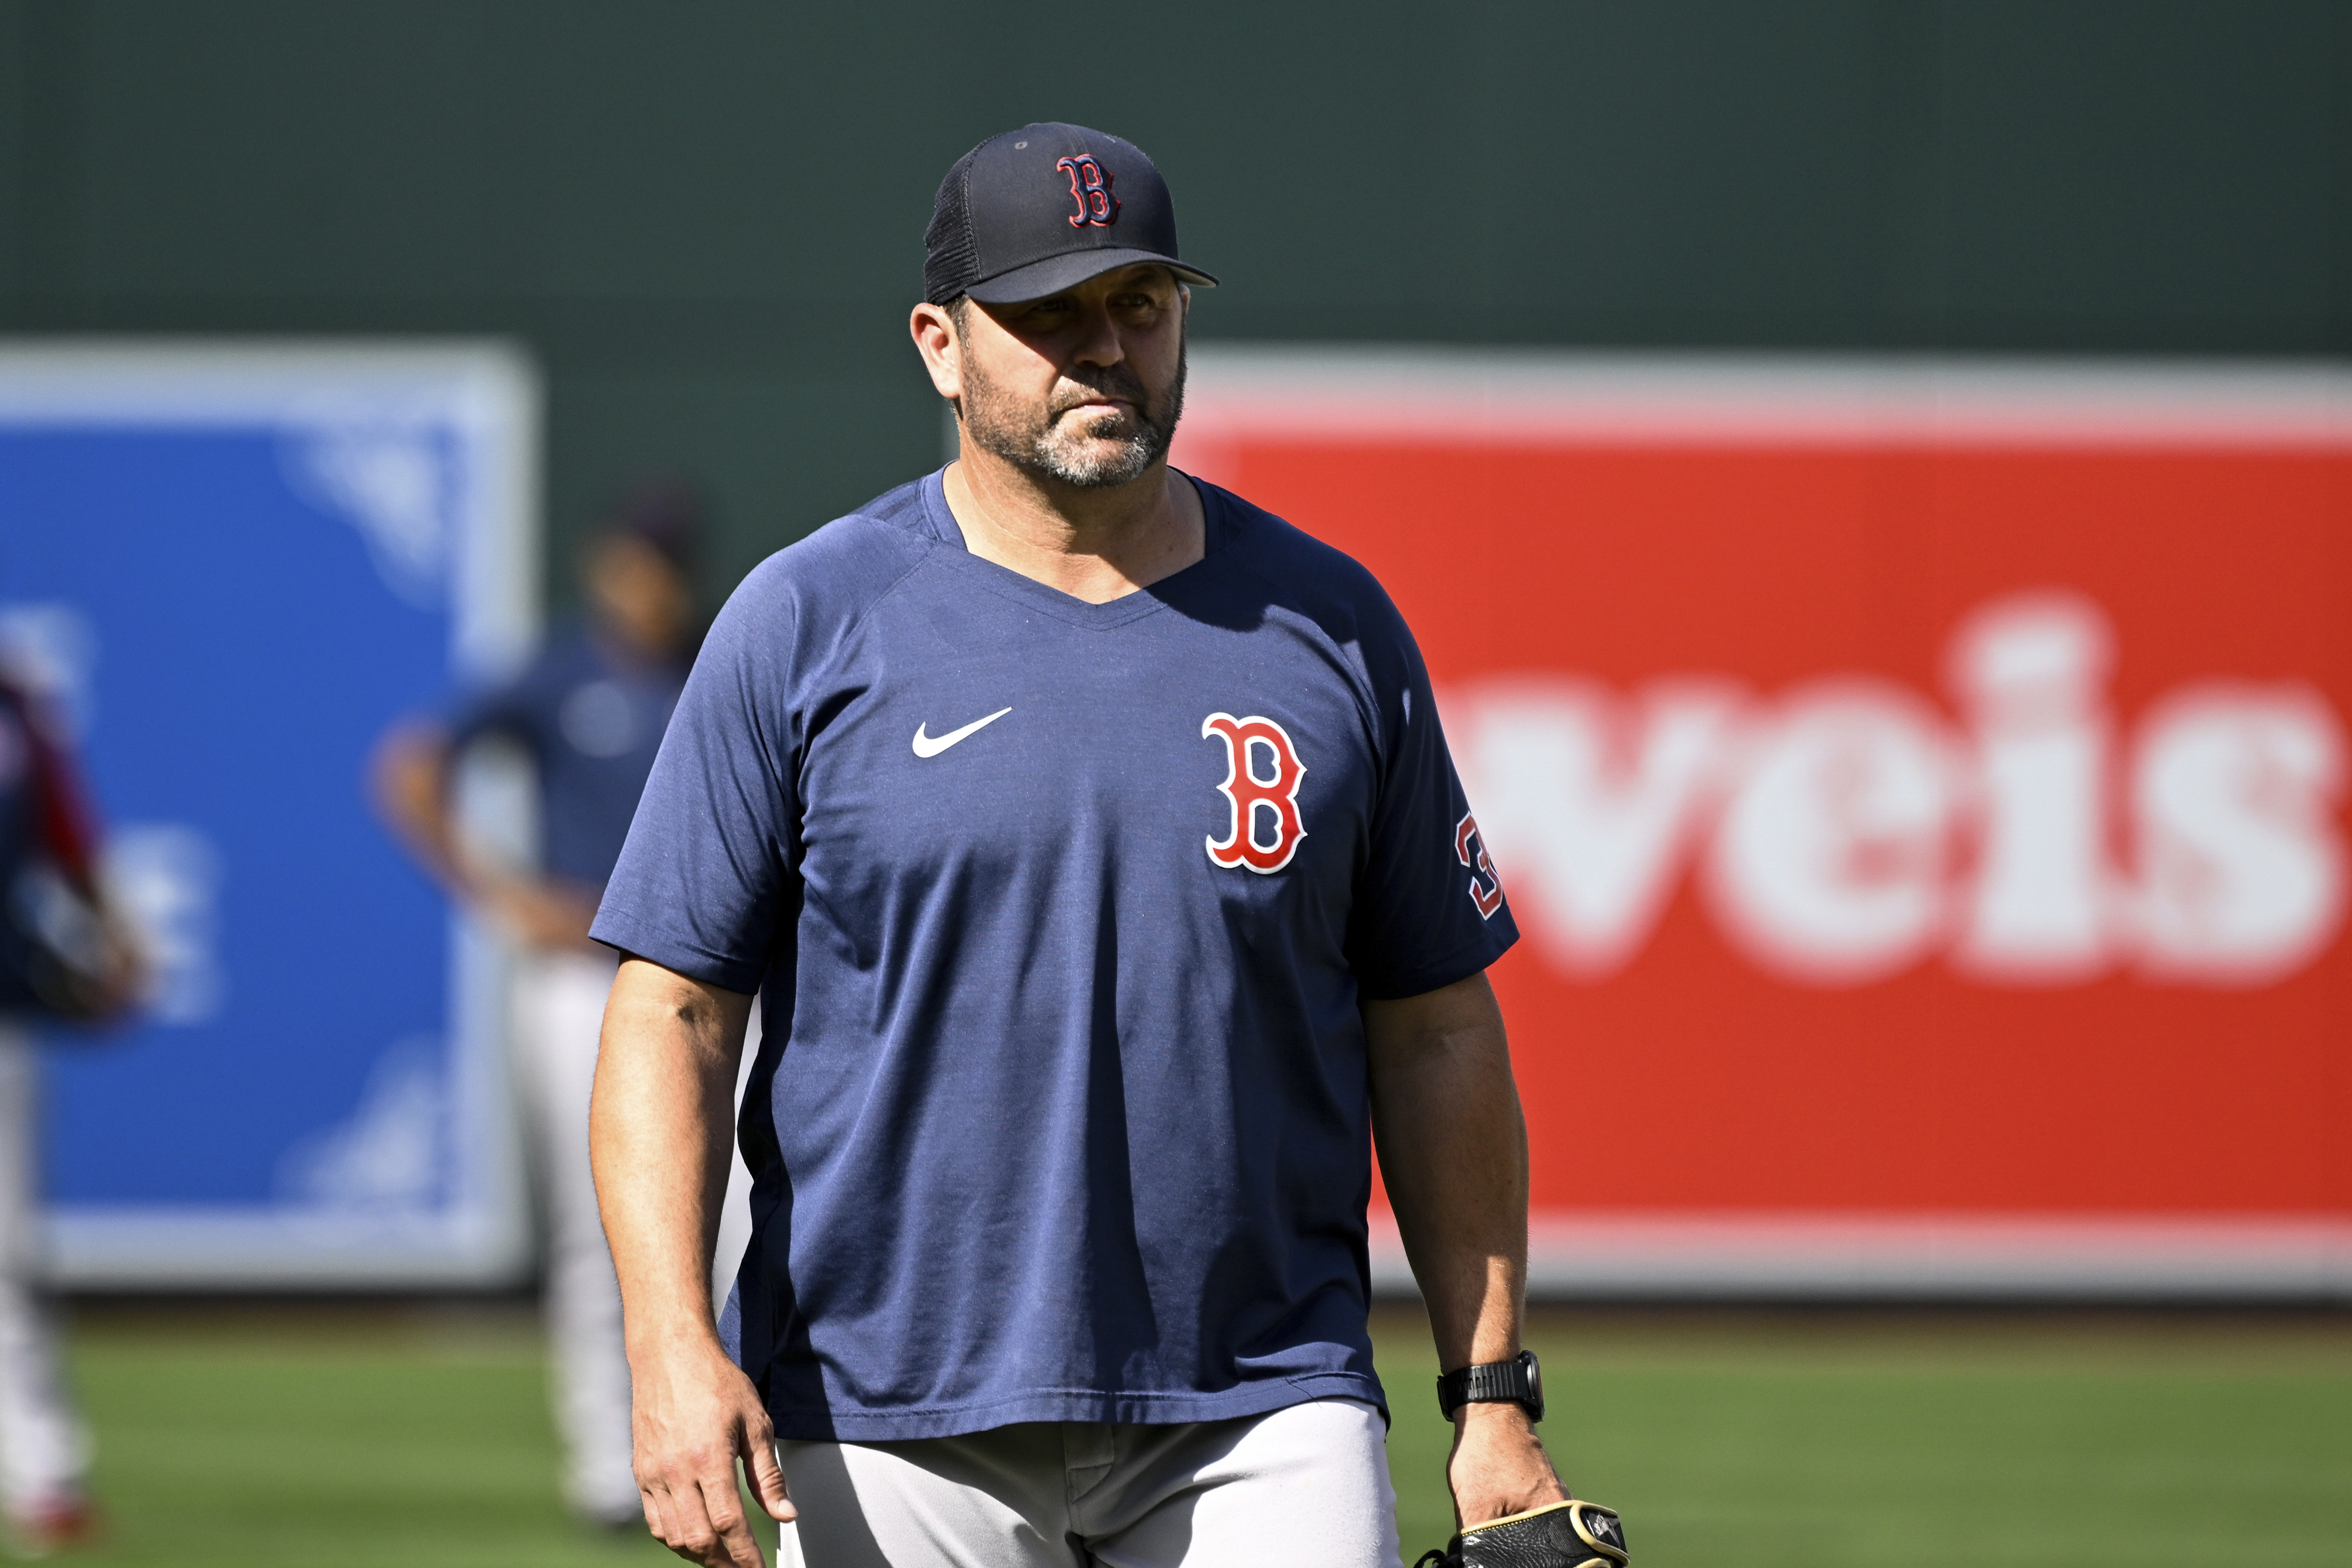 Red Sox catcher Varitek announces retirement, Sports